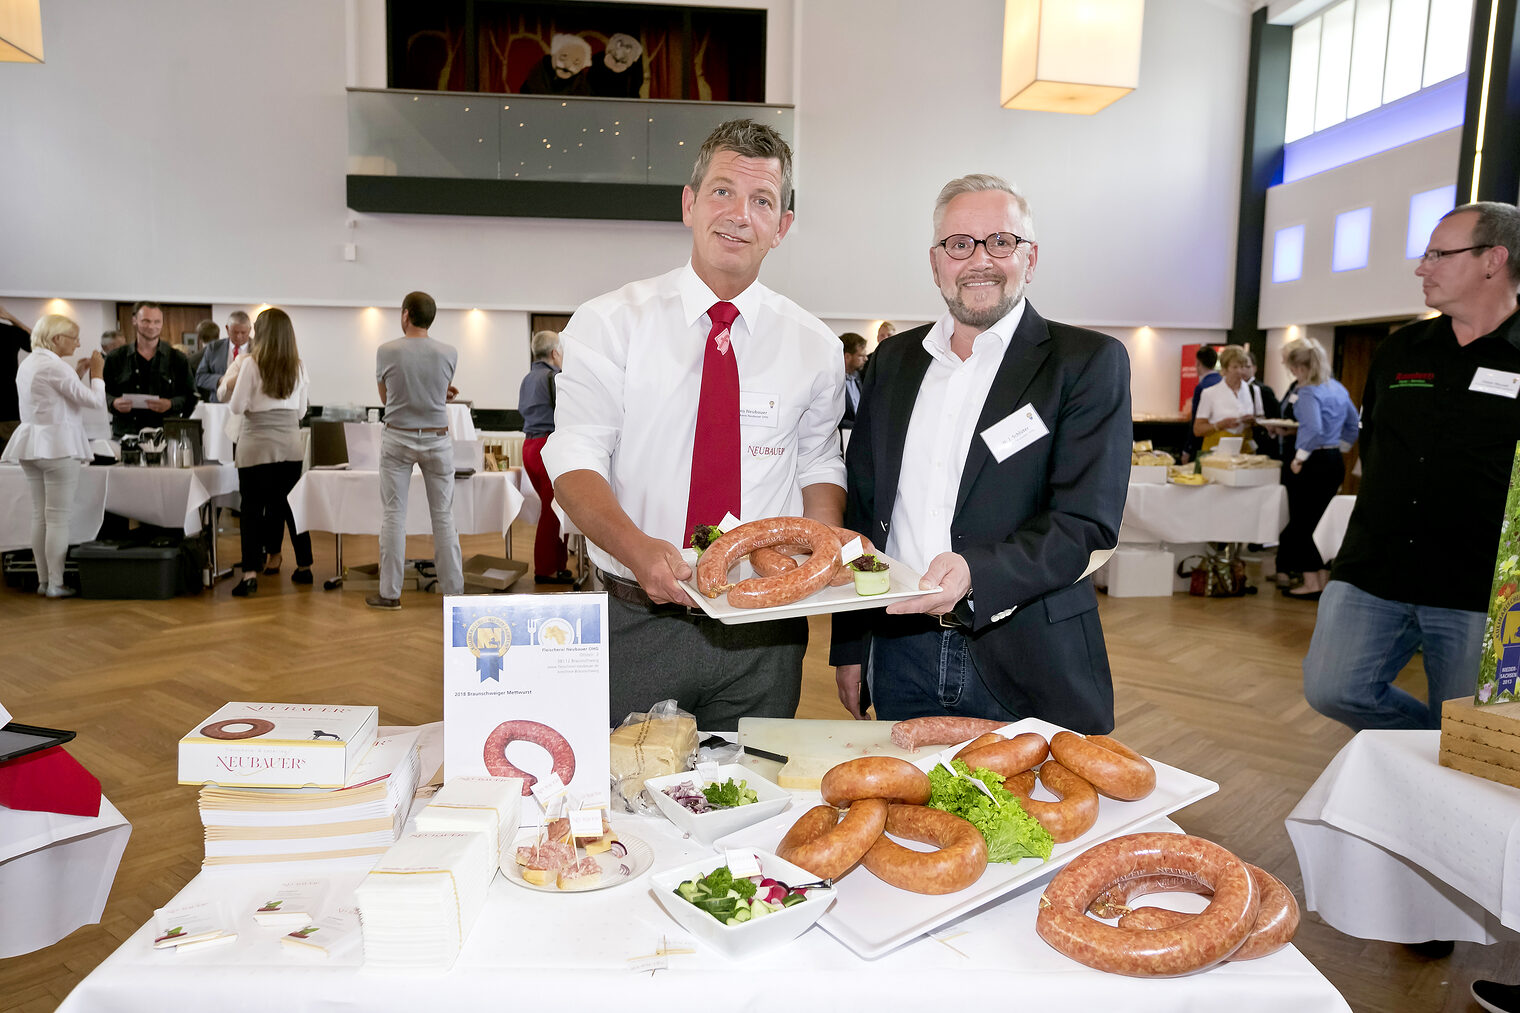 Fleischerei Neubauer - Kulinarischer Botschafter Niedersachsen